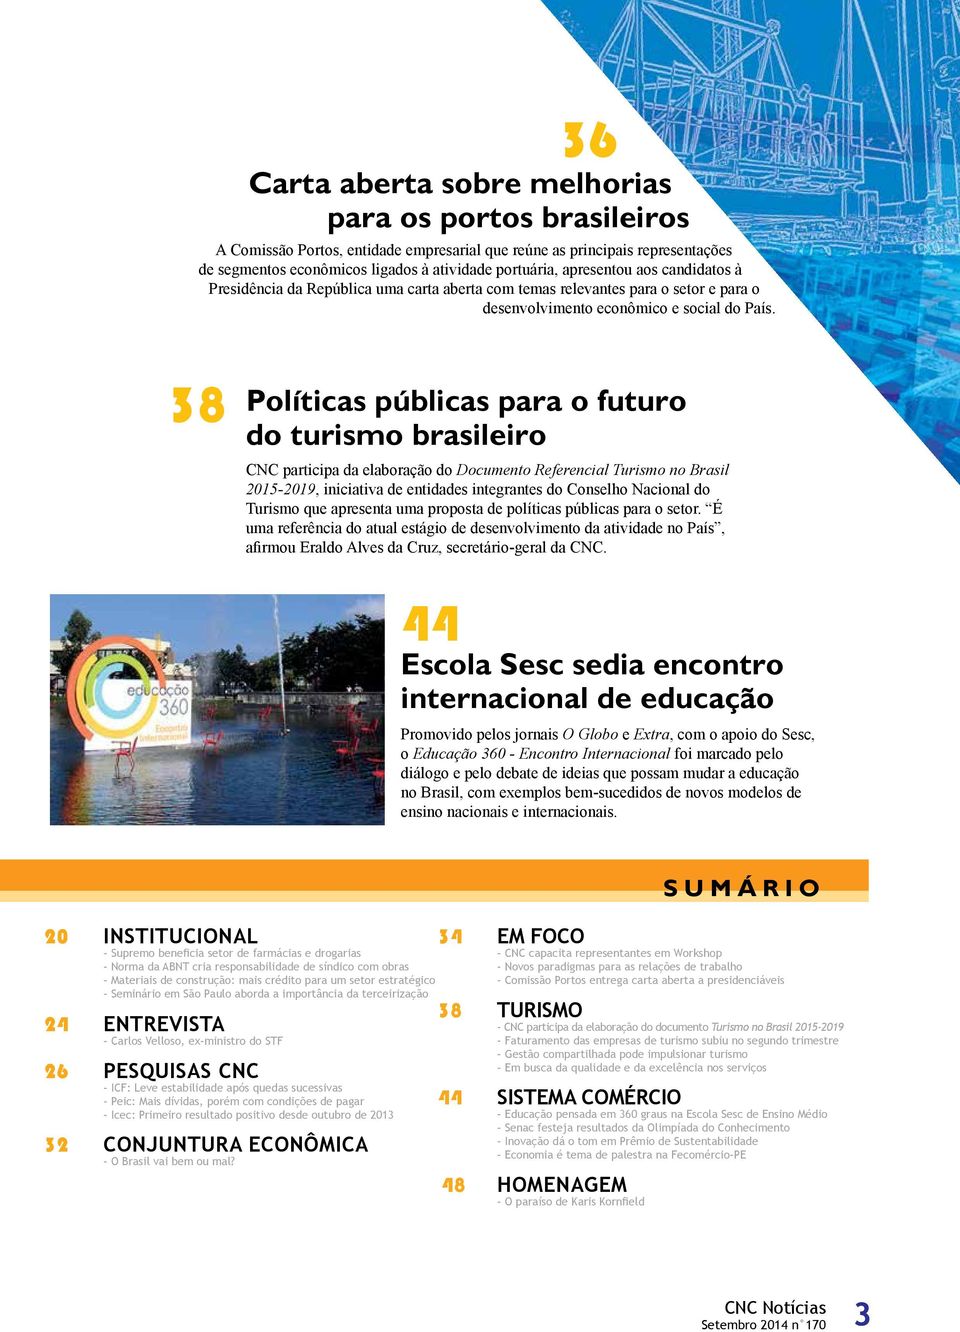 38 Políticas públicas para o futuro do turismo brasileiro CNC participa da elaboração do Documento Referencial Turismo no Brasil 2015-2019, iniciativa de entidades integrantes do Conselho Nacional do